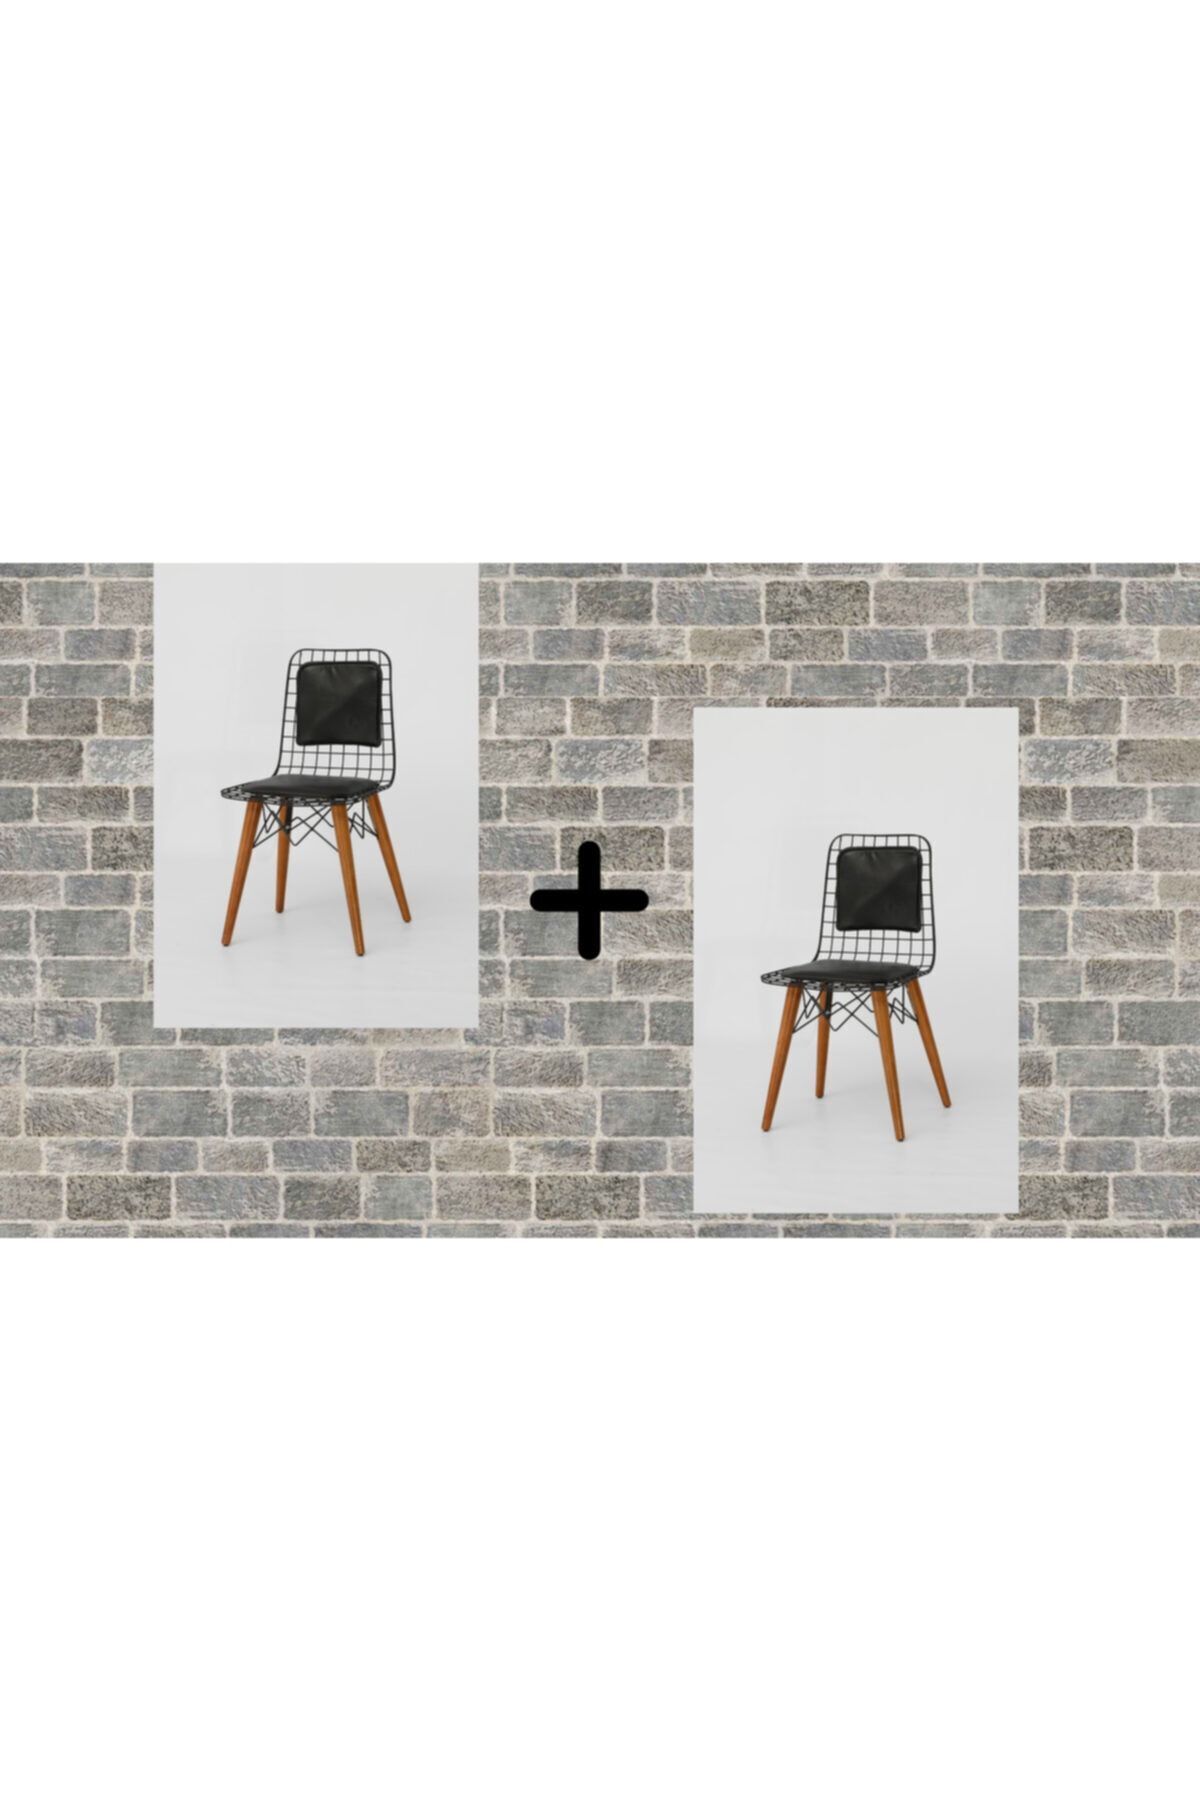 BY ORHAN GÜZEL Mutfak Sandalyesi , Balkon Sandalyesi , Salon Sandalyesi 2'li Ahşap Ayaklı Sırtlı Tel Sandalye